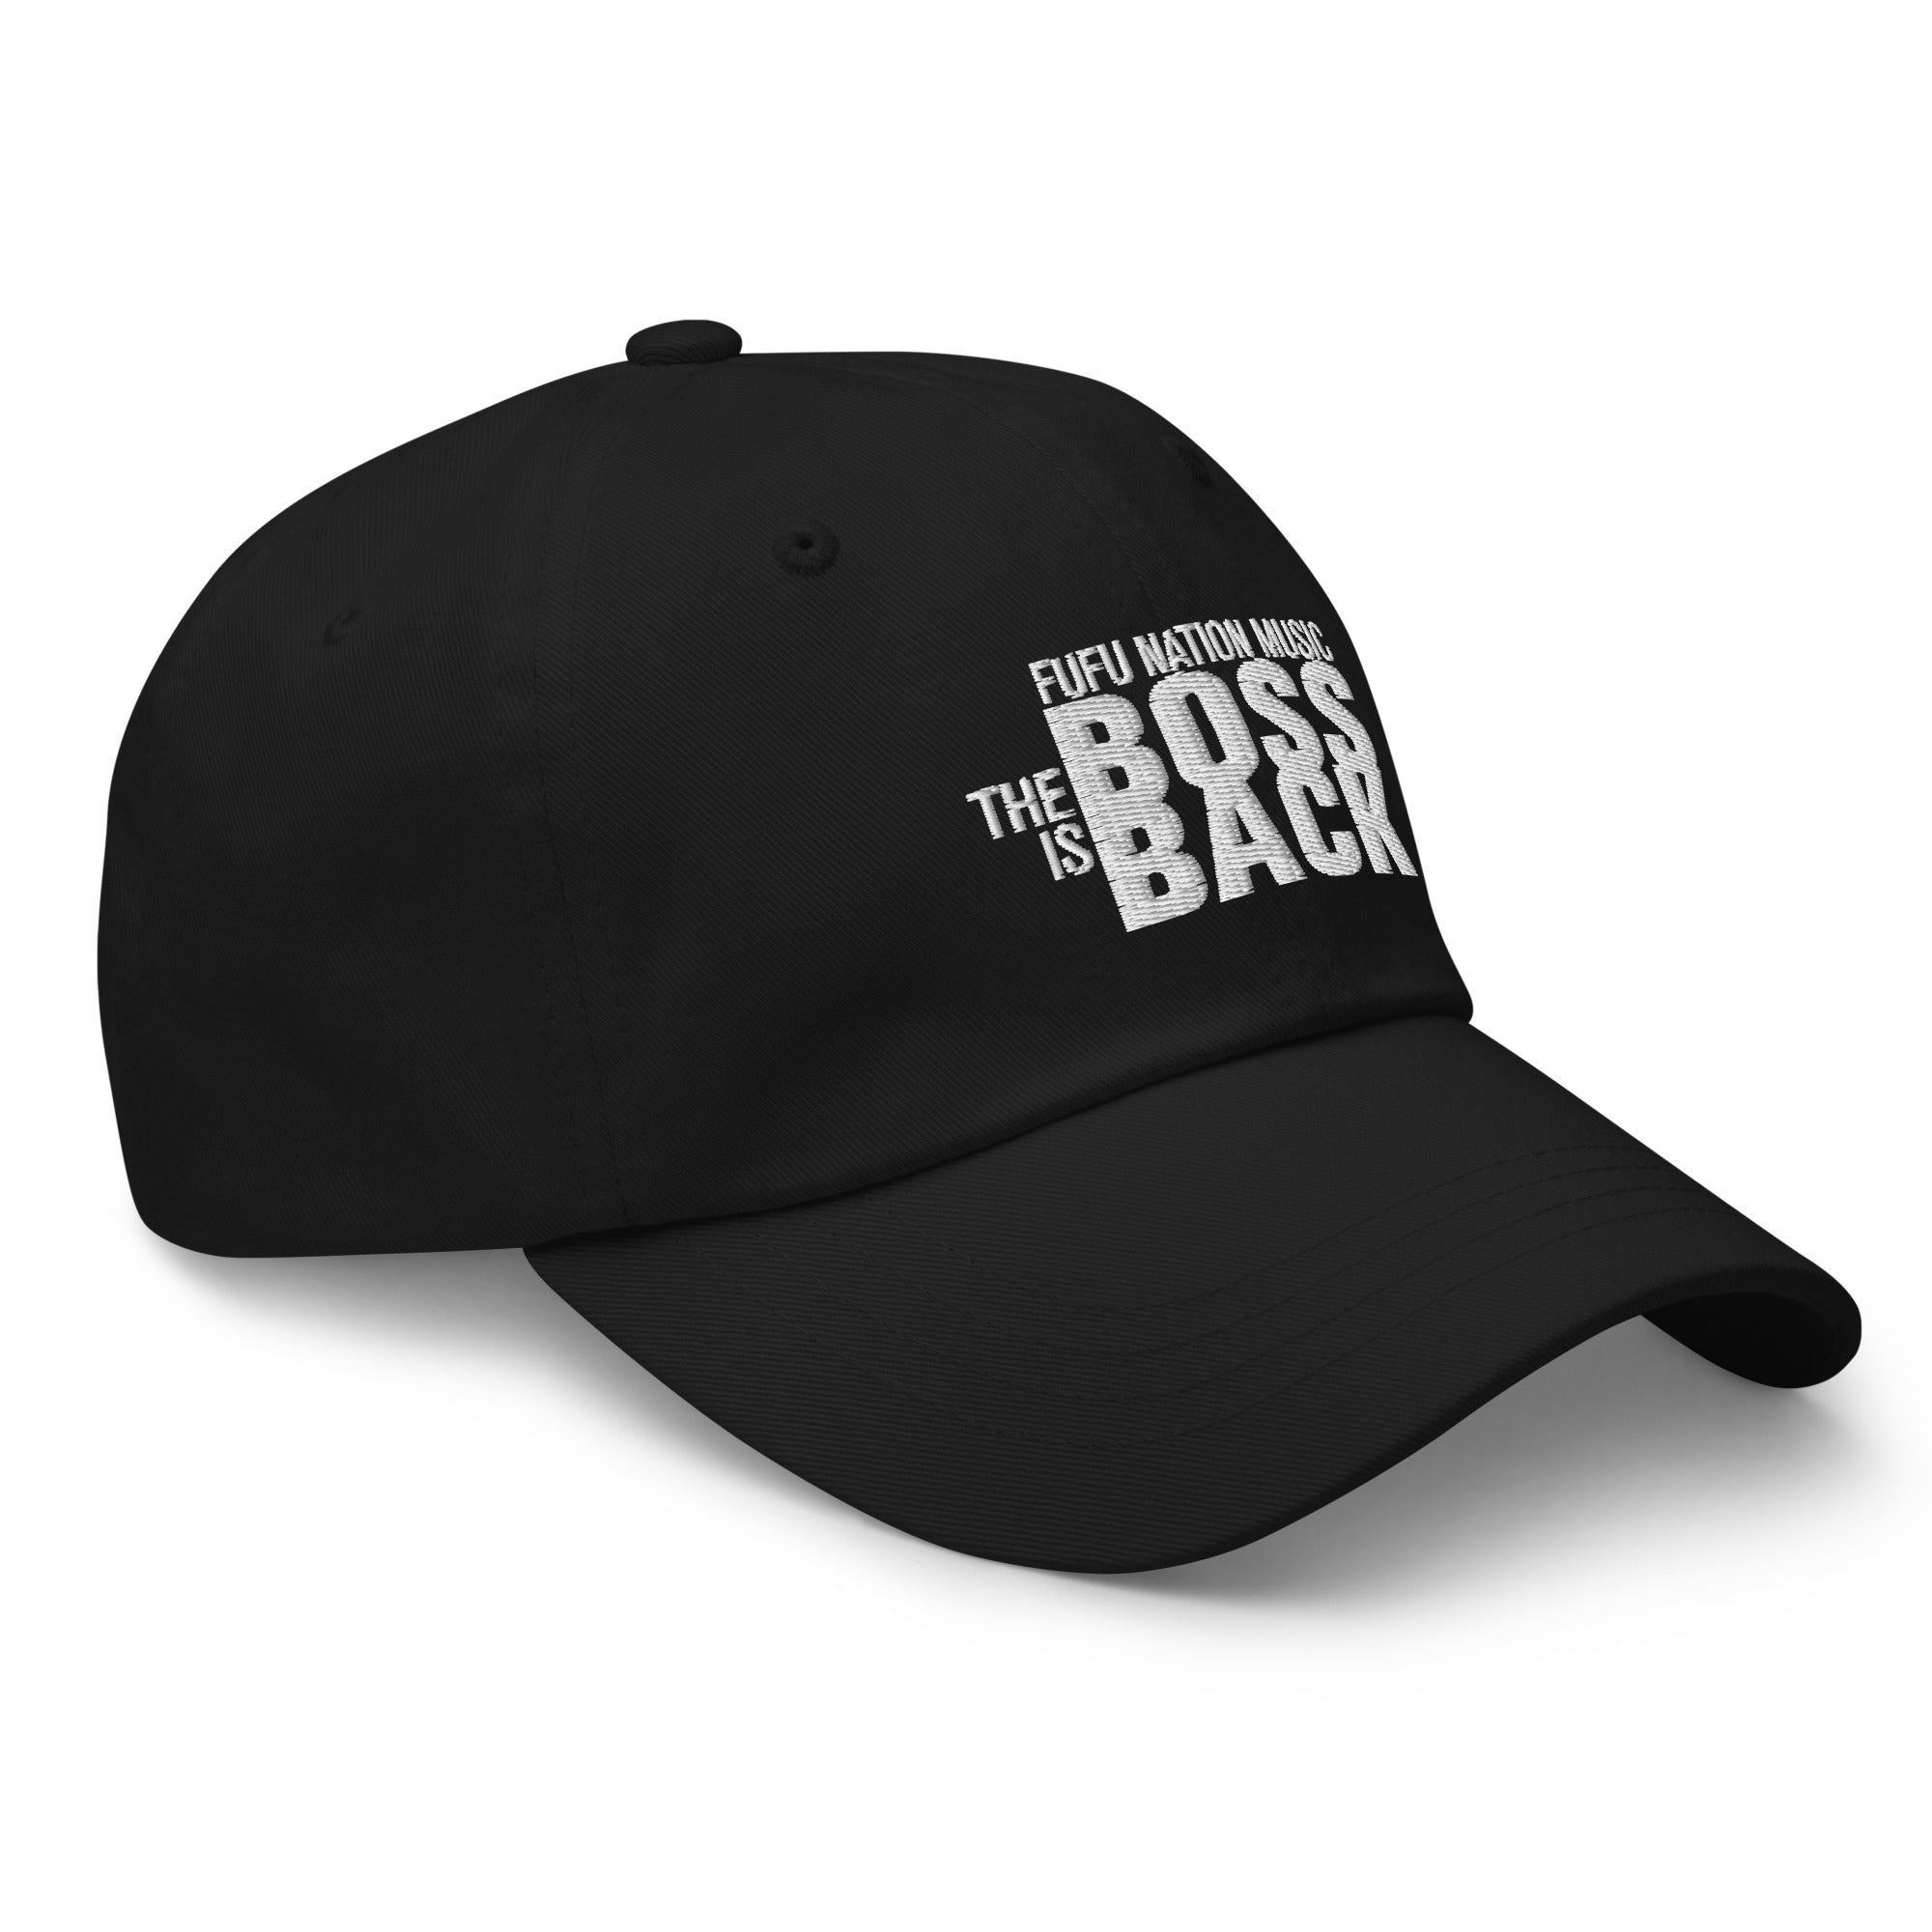 gstarfufu - Dad hat